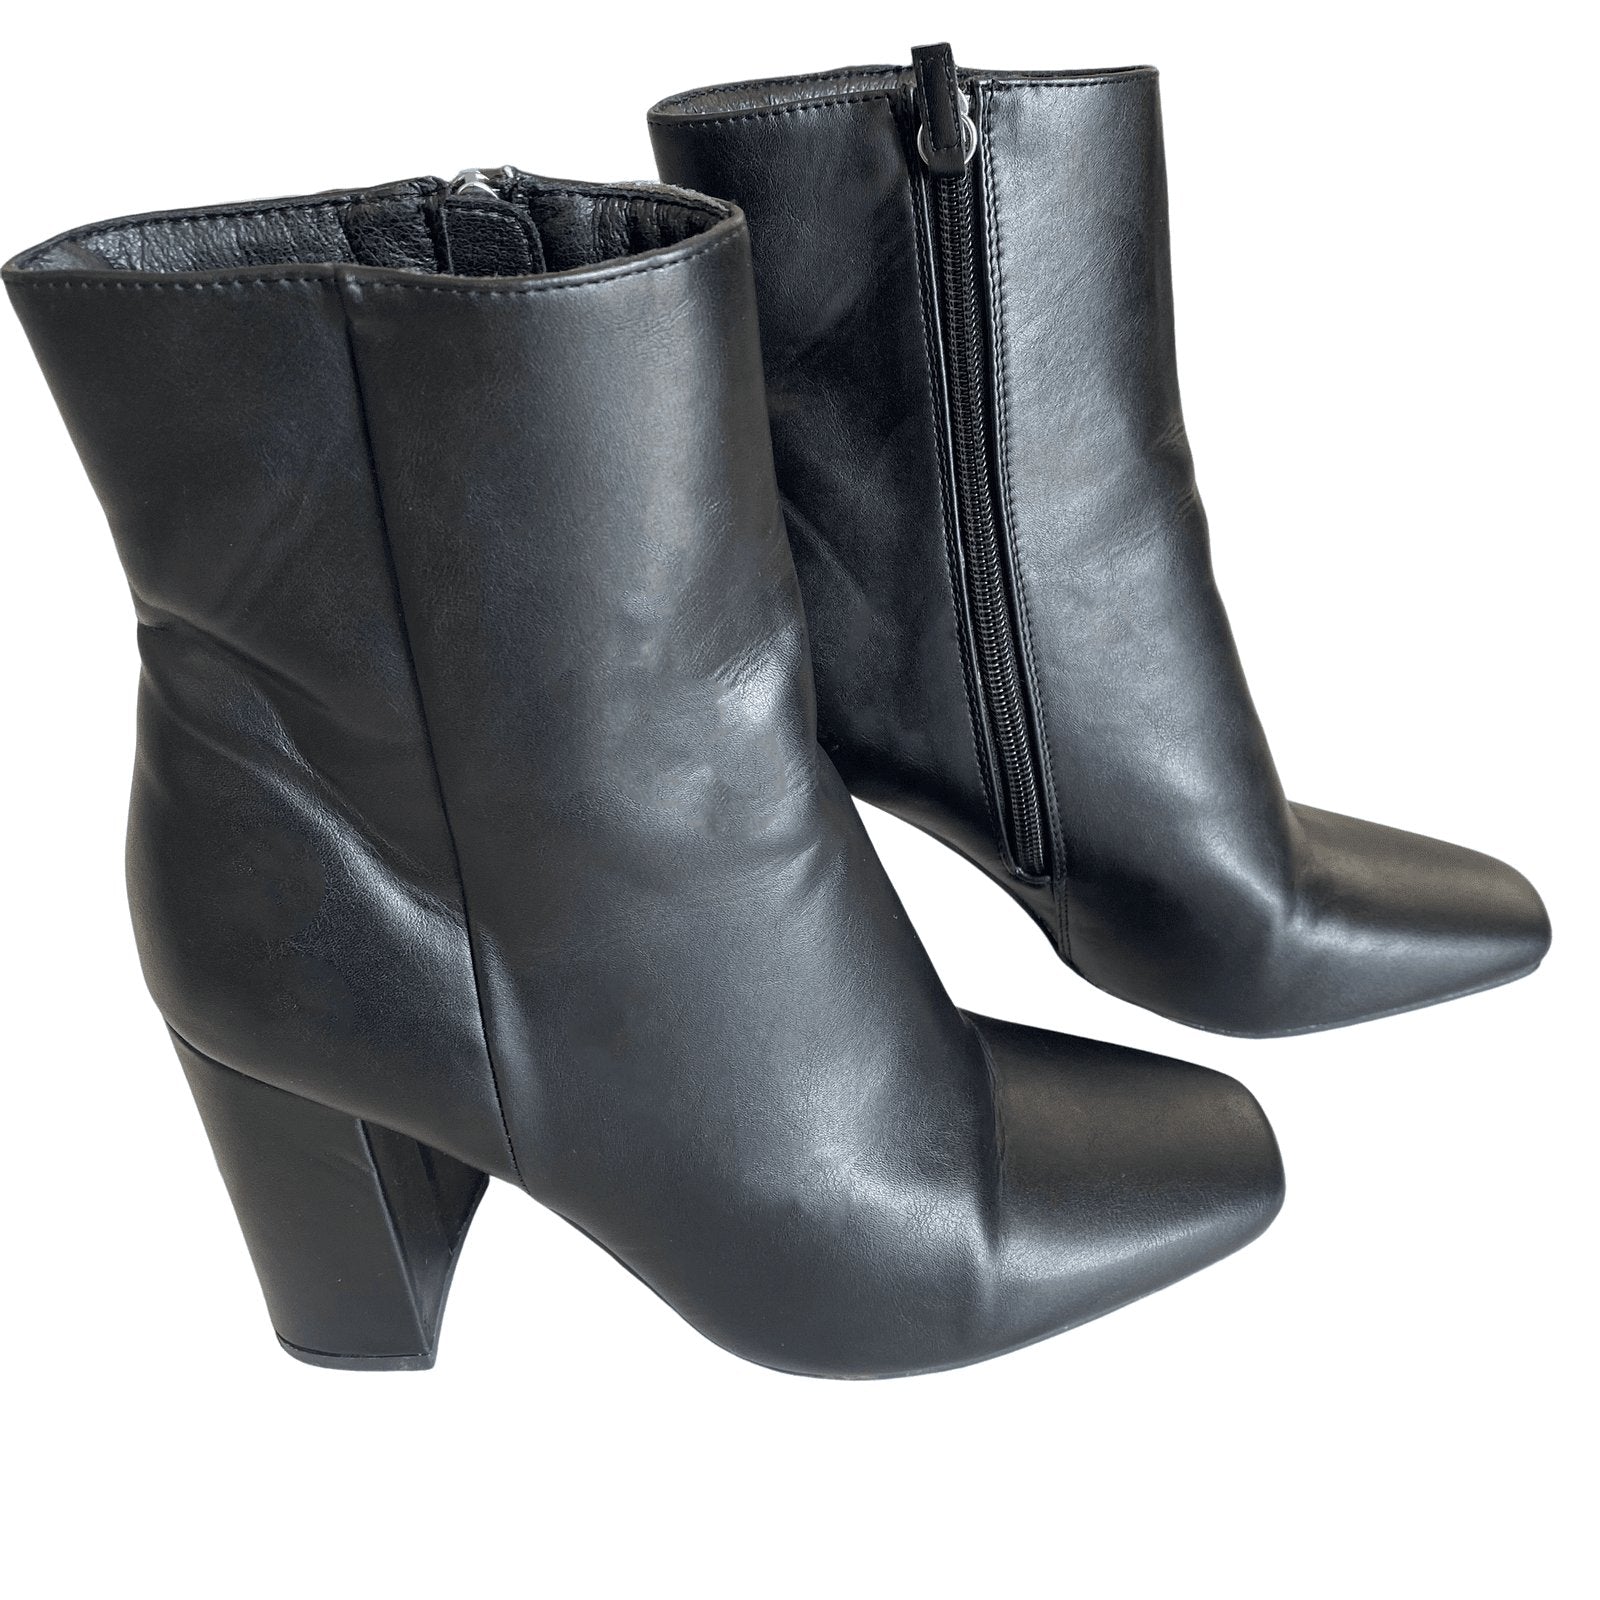 Novo boots | size 8 or EU 39